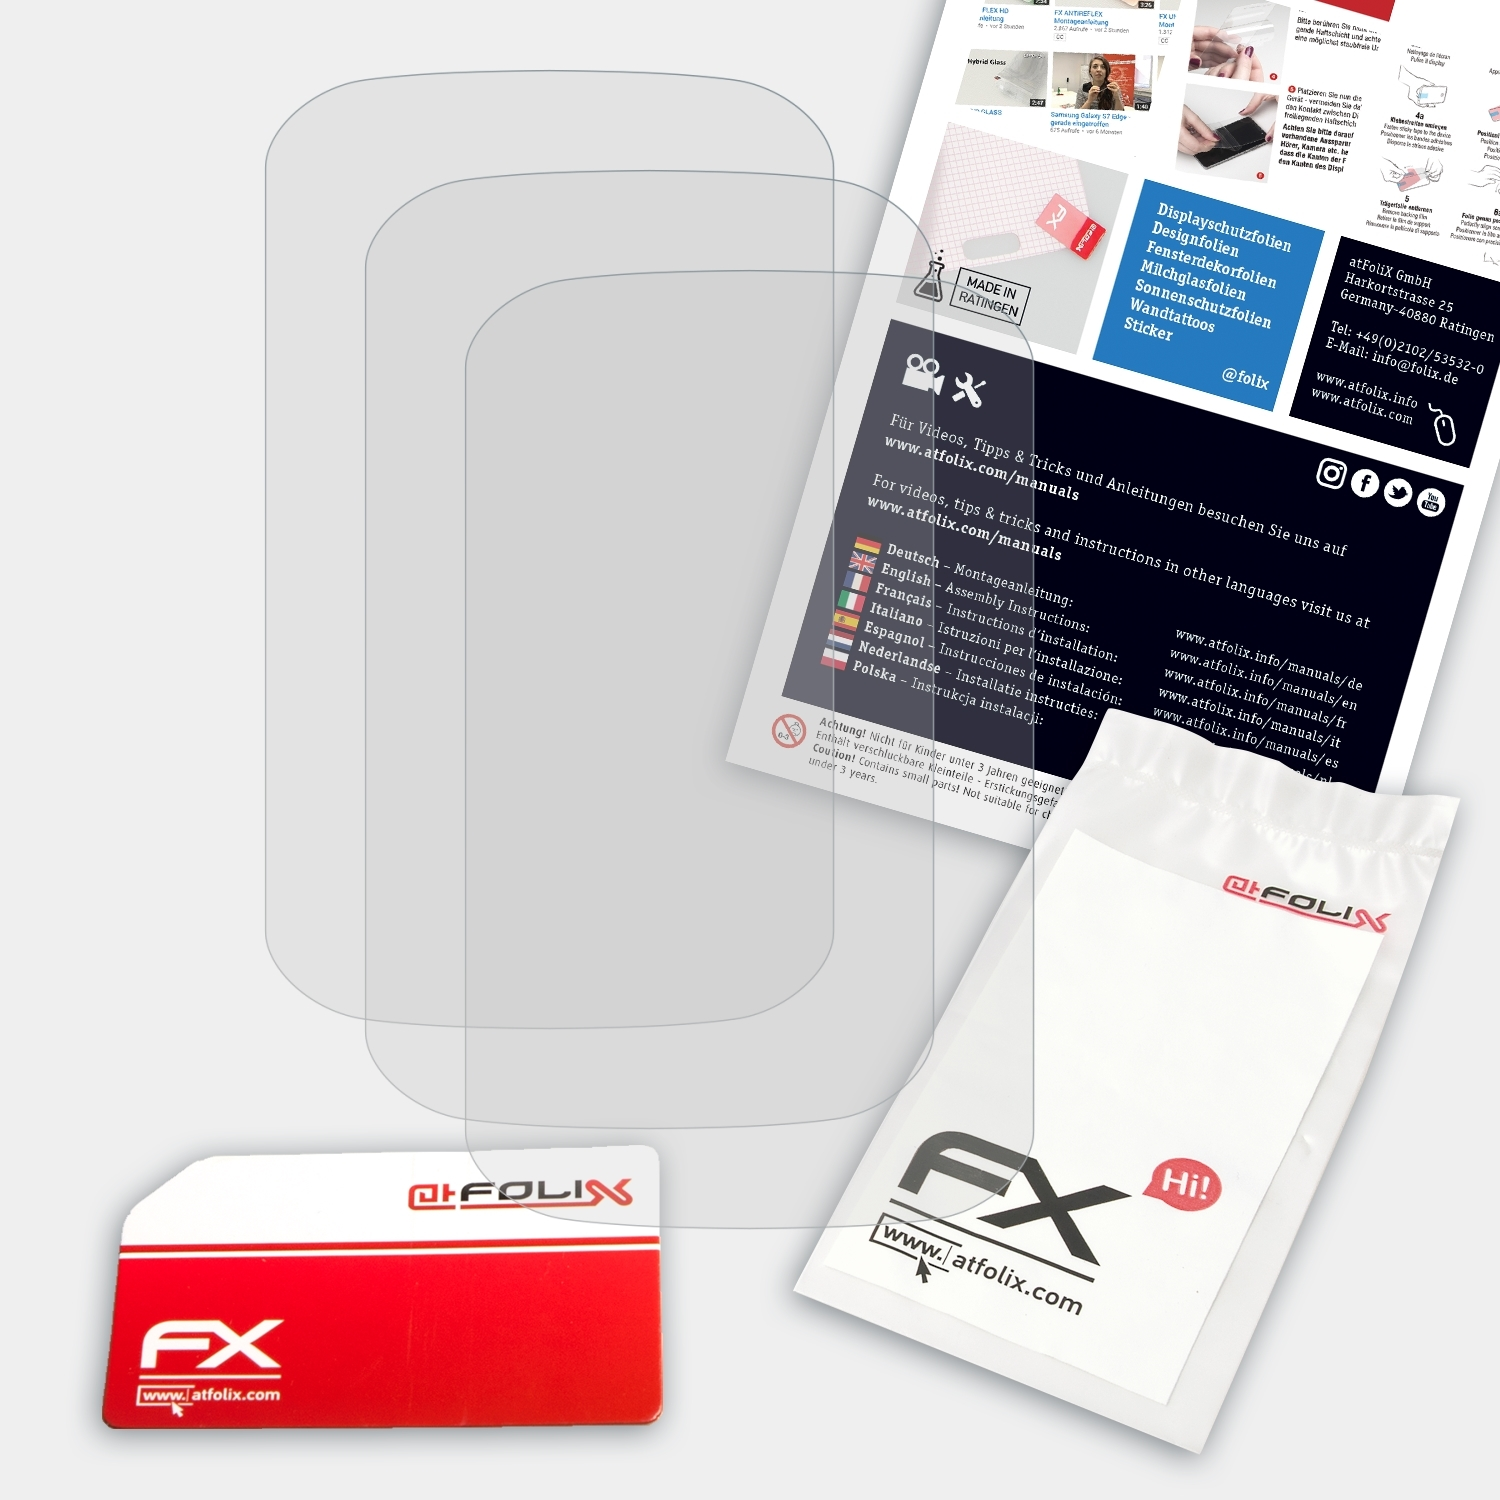 1000) ATFOLIX Garmin Explore FX-Antireflex 3x Edge Displayschutz(für